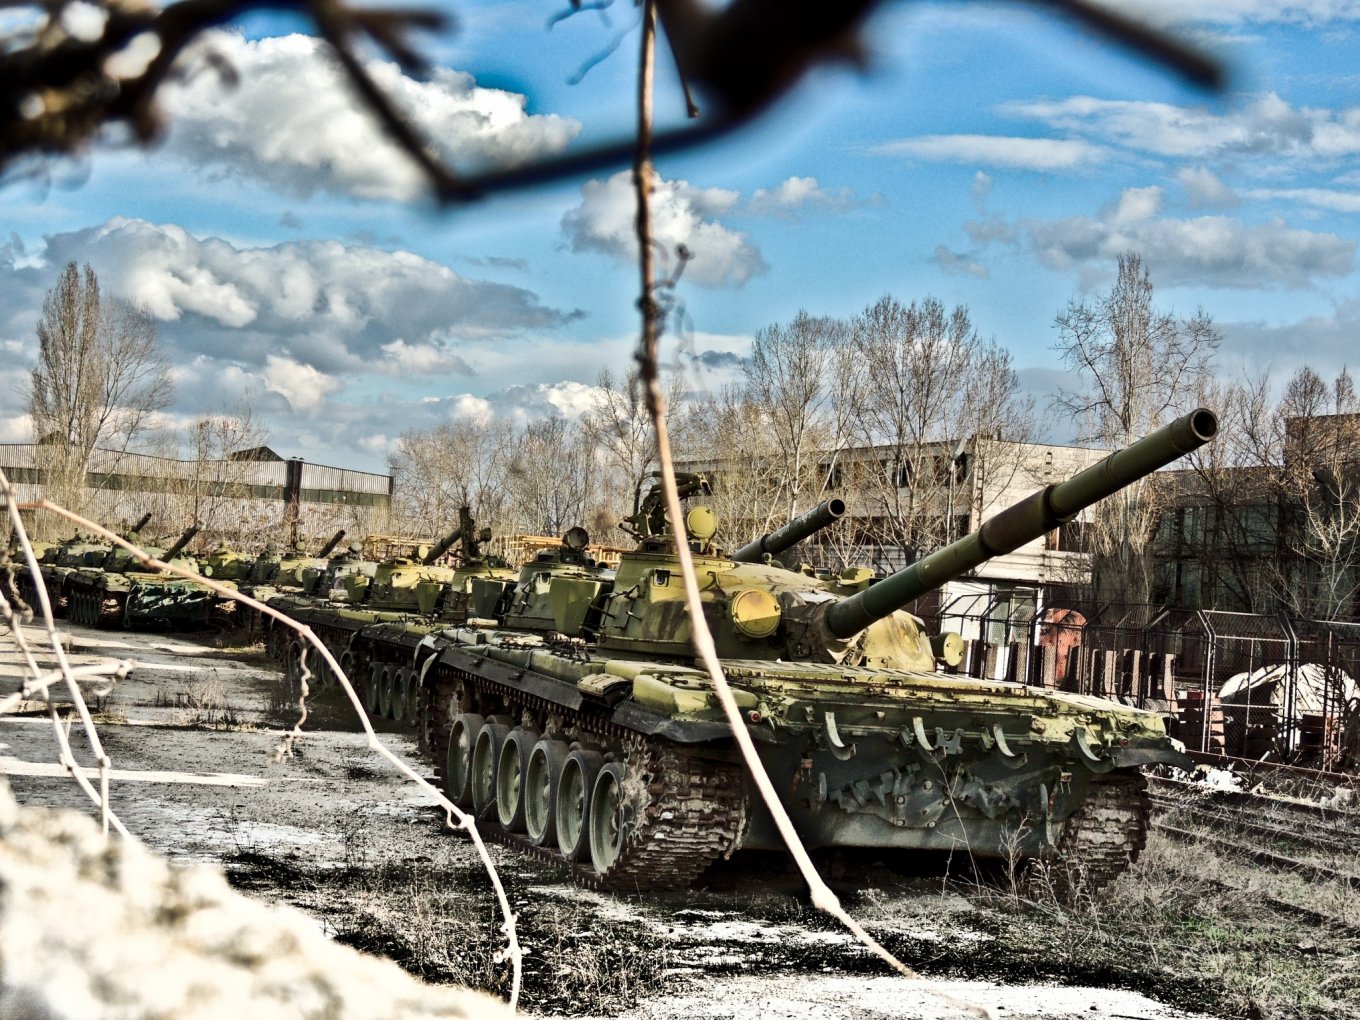 Romanian T-72s in storage in Bucharest, 2014